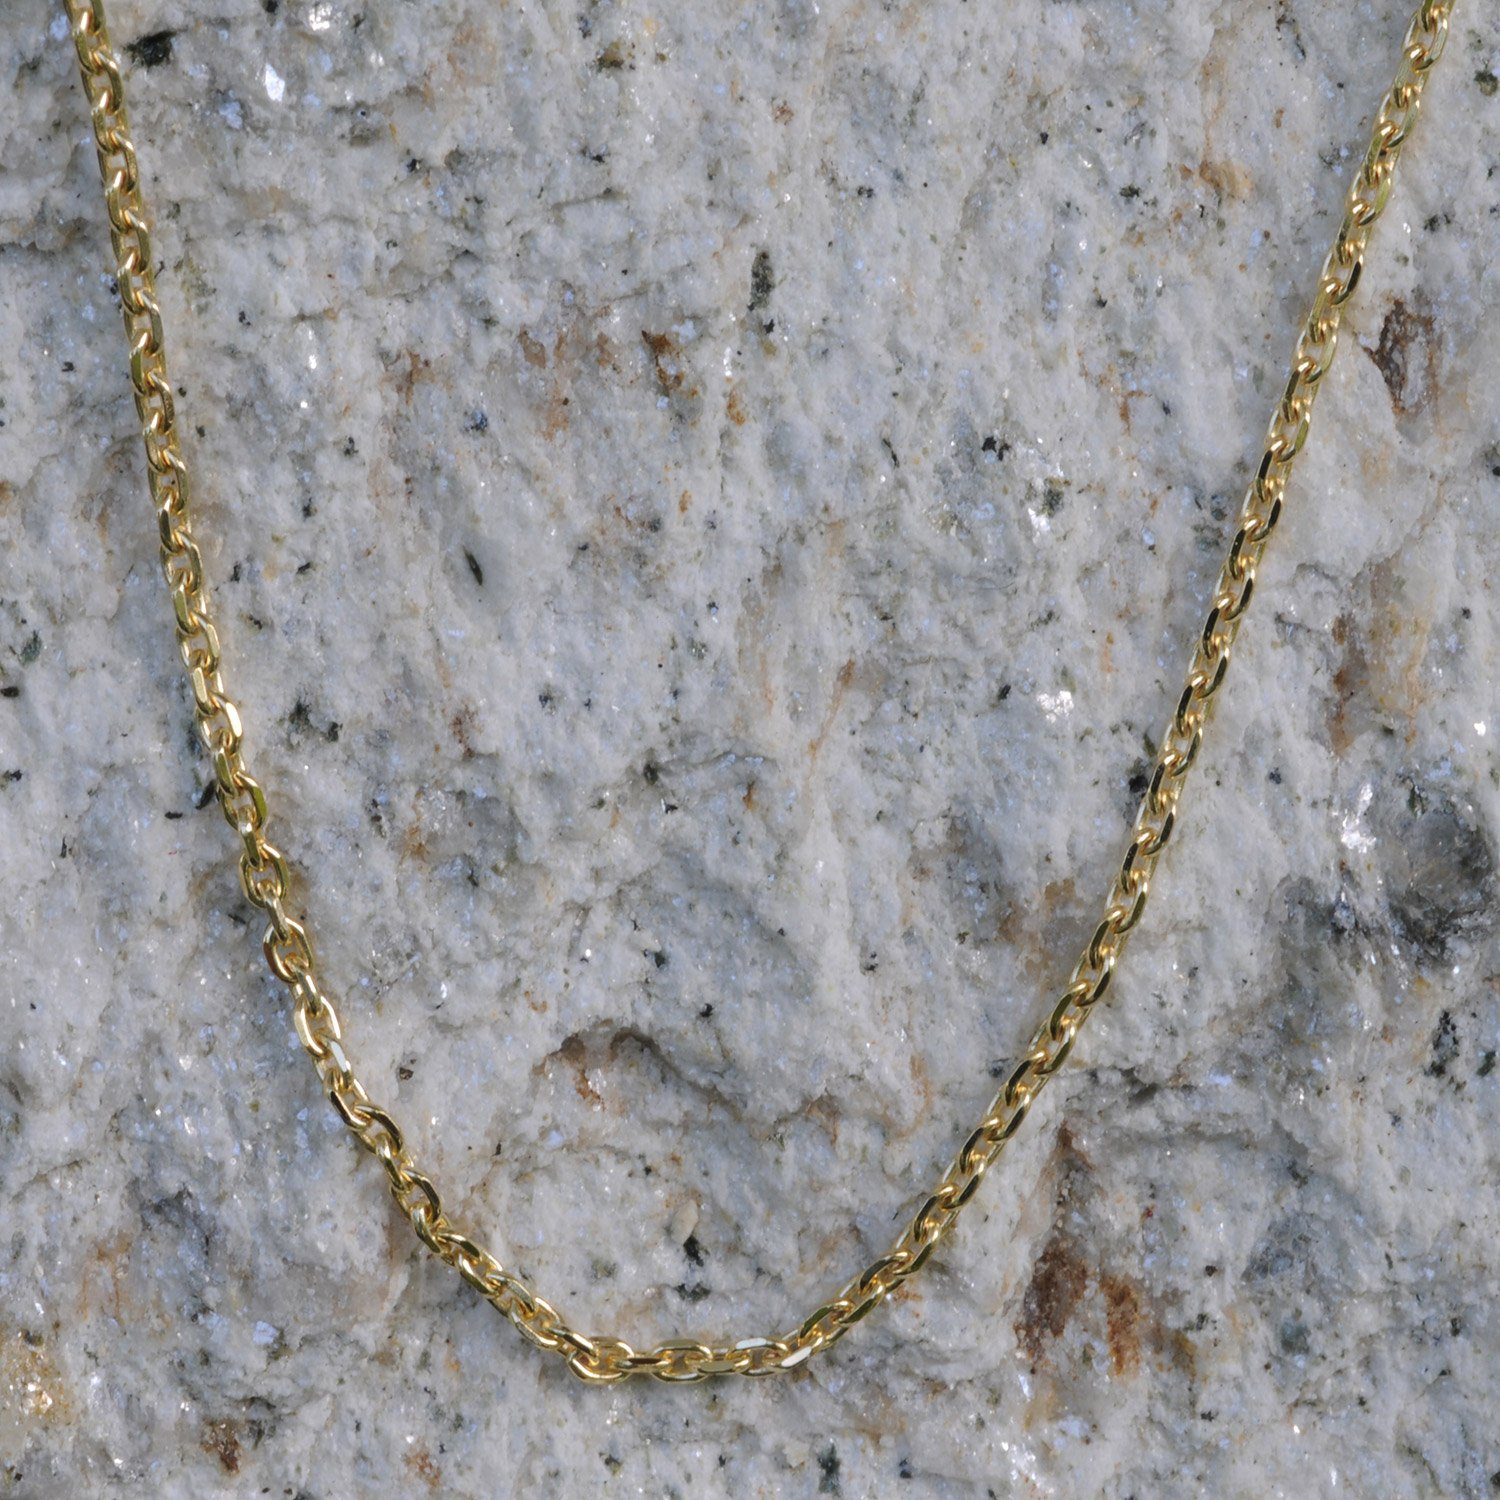 Herren Schmuck HOPLO Goldkette 1,3 mm 50 cm 750 - 18 Karat Gold Halskette Ankerkette diamantiert massiv Gold hochwertige Goldket